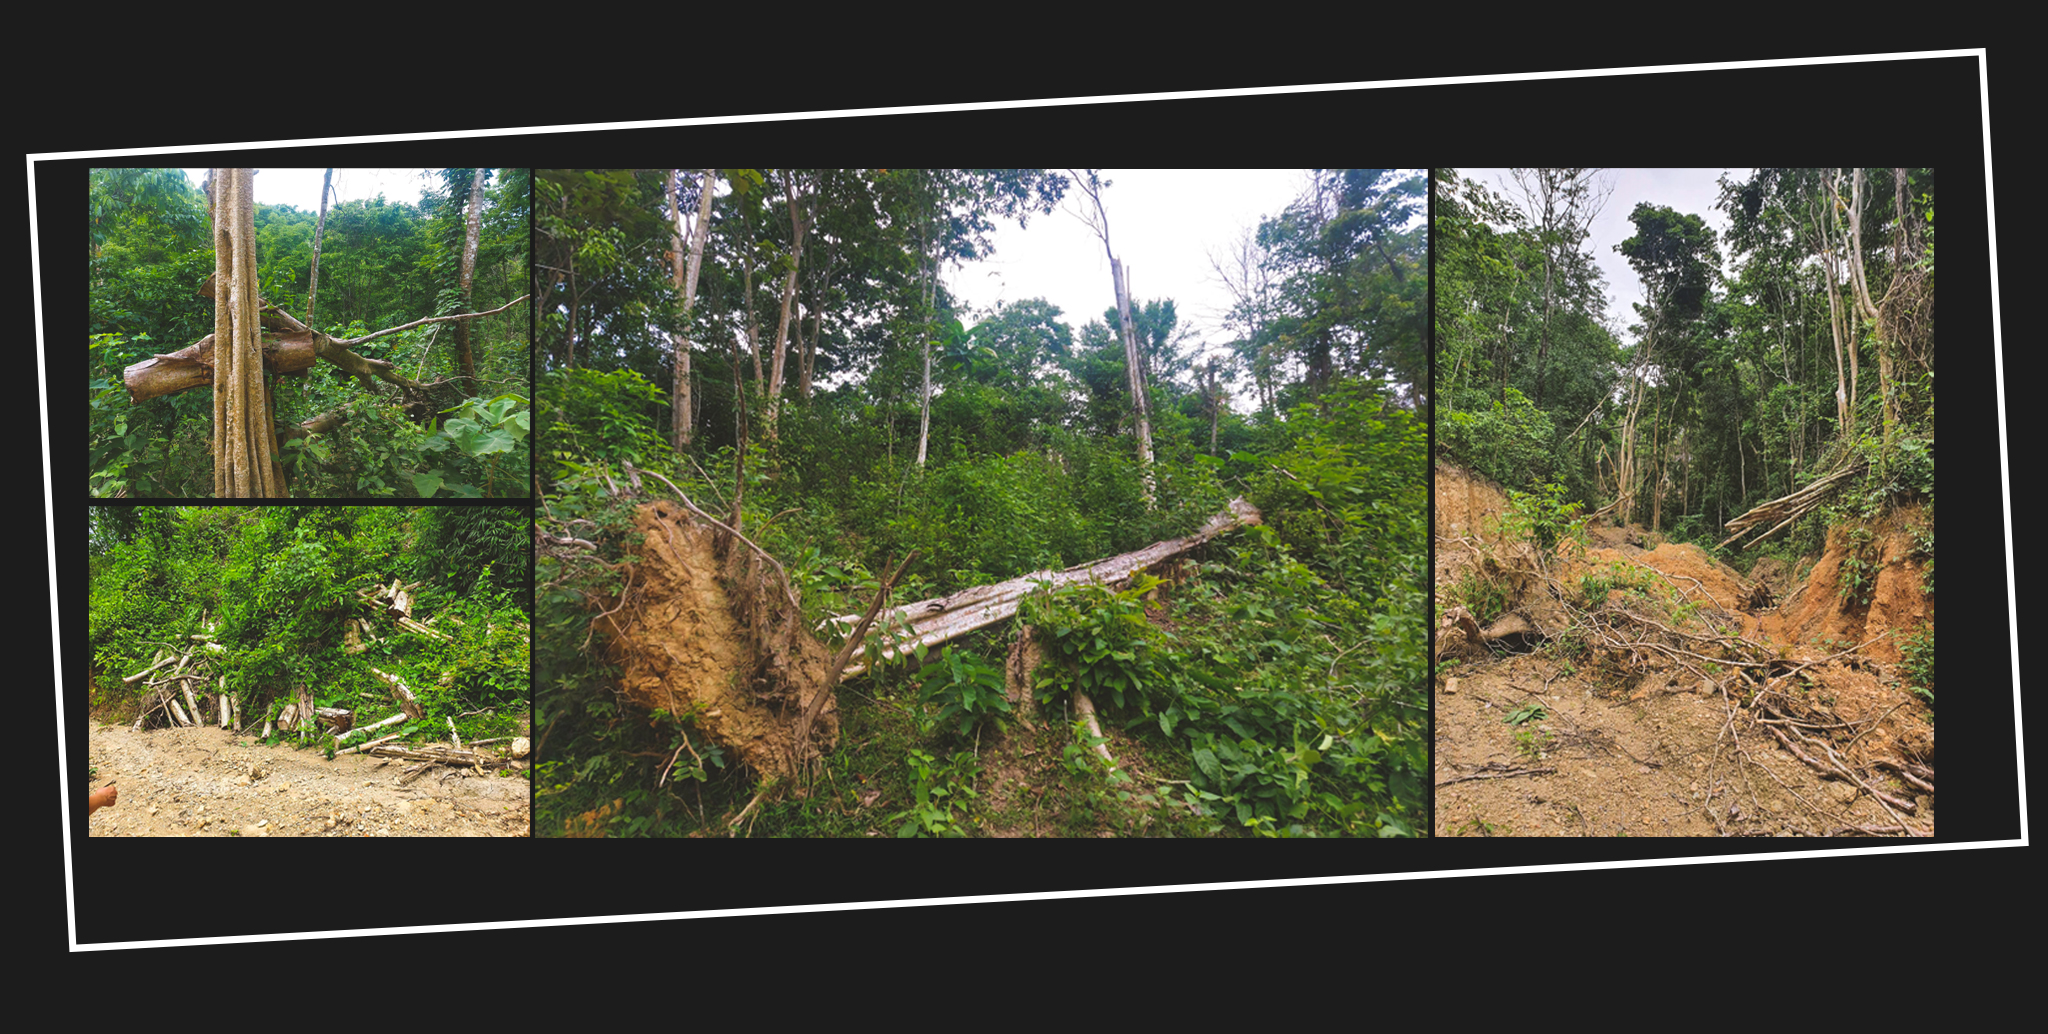 Cây rừng bị chặt tại bản Tổng Tiến; Cây săng lẻ tại vùng rừng cộng đồng ở bản Tổng Tiến bị đào; Hình ảnh người dân cung cấp về hiện trạng chặt phá rừng tự nhiên ở xã Đôn Phục.